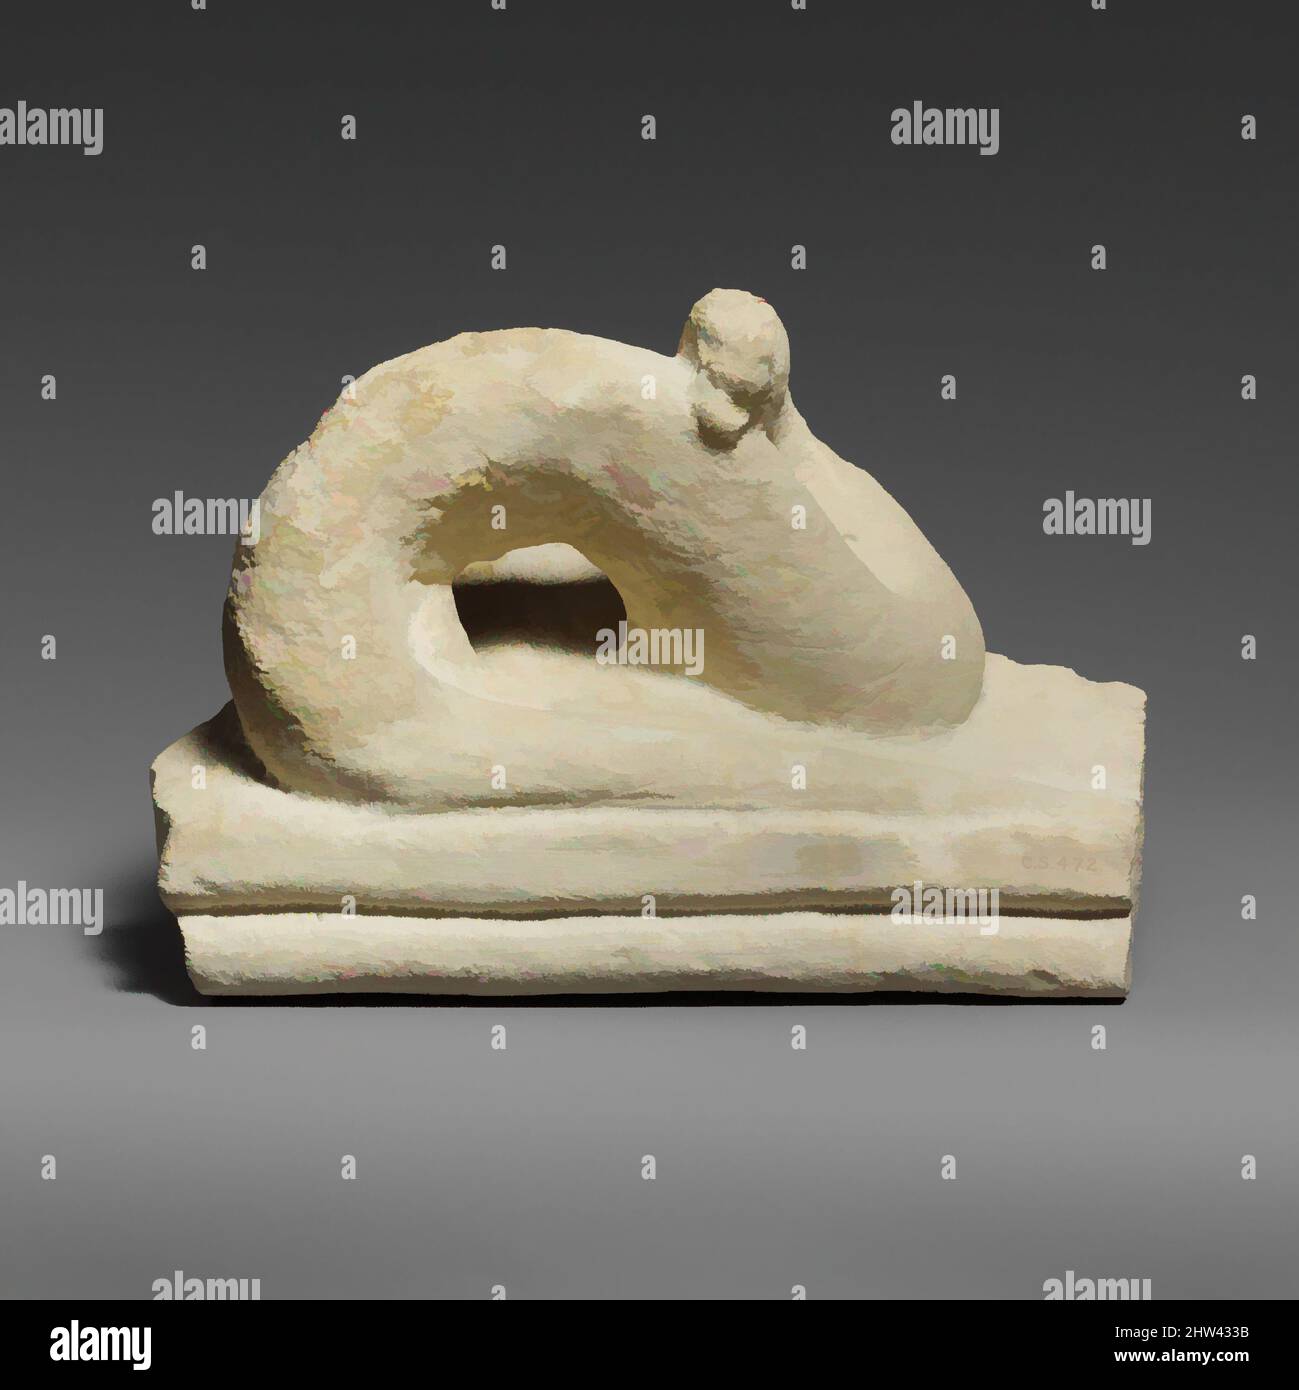 Arte ispirata da due frammenti di un coperchio di sarcofago calcareo con serpenti, classica, prima metà del 5th secolo a.C., cipriota, calcare, totale: 8 x 11 1/2 x 8 1/4 pollici. (20,3 x 29,2 x 21 cm), scultura in pietra, i due frammenti non congiunti appartengono al coperchio di un grande sarcofago, opere classiche modernizzate da Artotop con un tuffo di modernità. Forme, colore e valore, impatto visivo accattivante sulle emozioni artistiche attraverso la libertà delle opere d'arte in modo contemporaneo. Un messaggio senza tempo che persegue una nuova direzione selvaggiamente creativa. Artisti che si rivolgono al supporto digitale e creano l'NFT Artotop Foto Stock